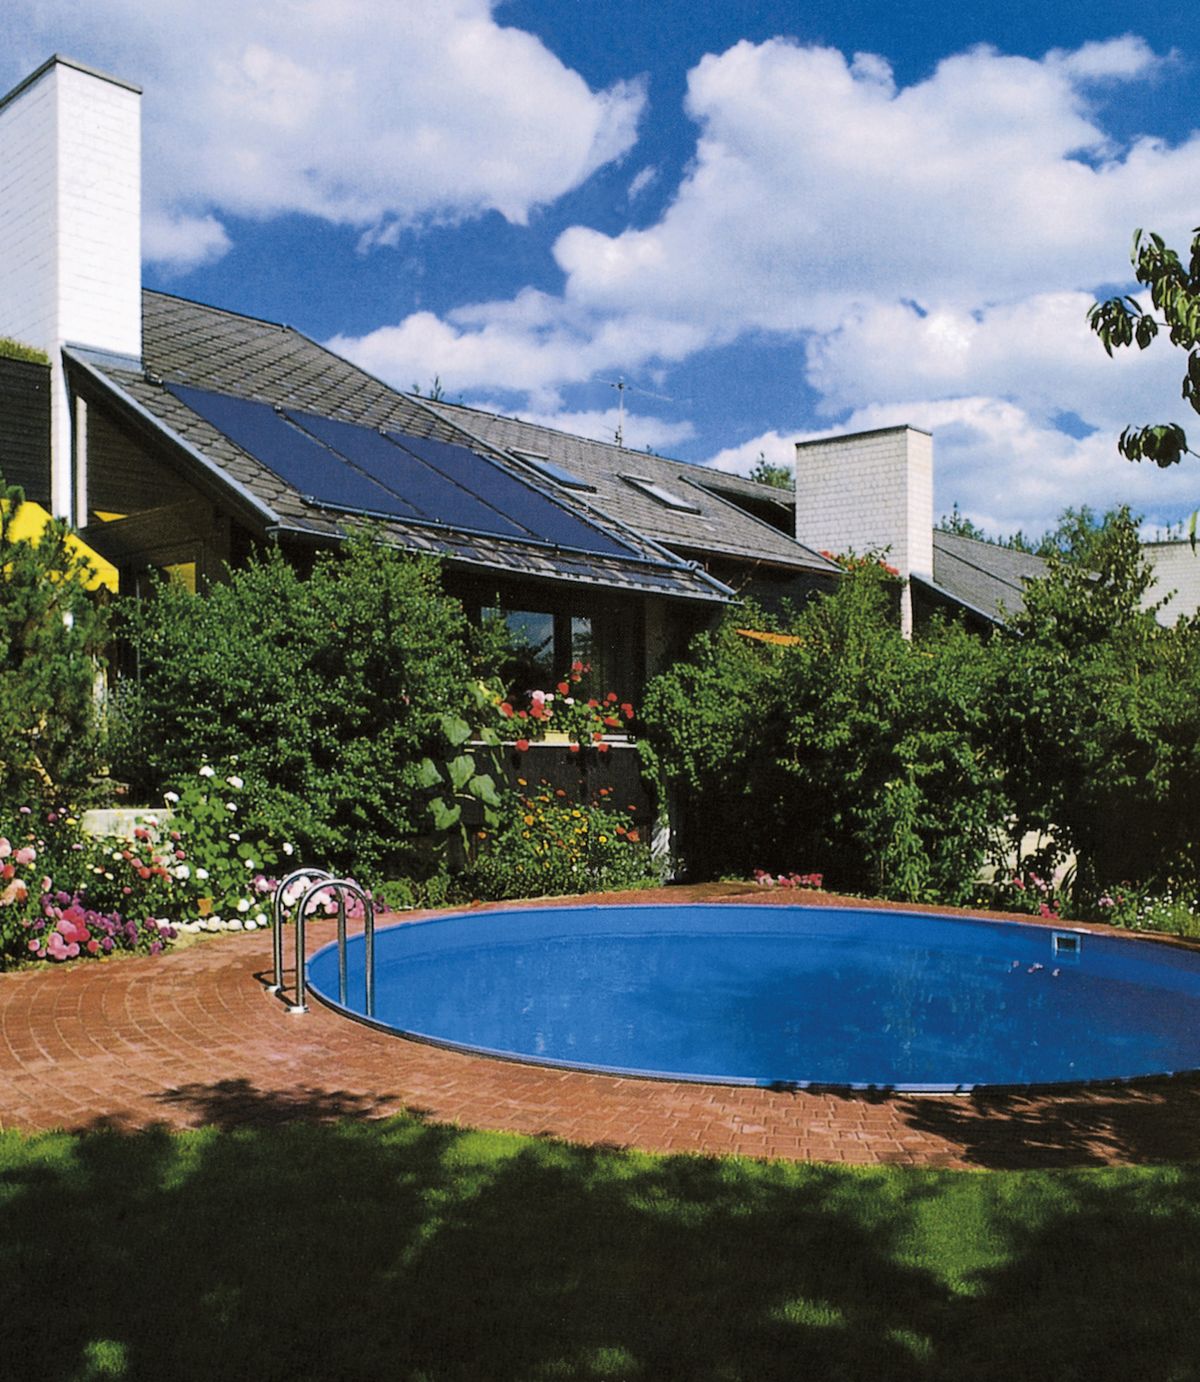 Solární panely speciálně vyvinuté pro ohřev vody  v bazénu mají vysokou účinnost, jednoduchou konstrukci, nízkou hmotnost a dají se snadno zapojit.